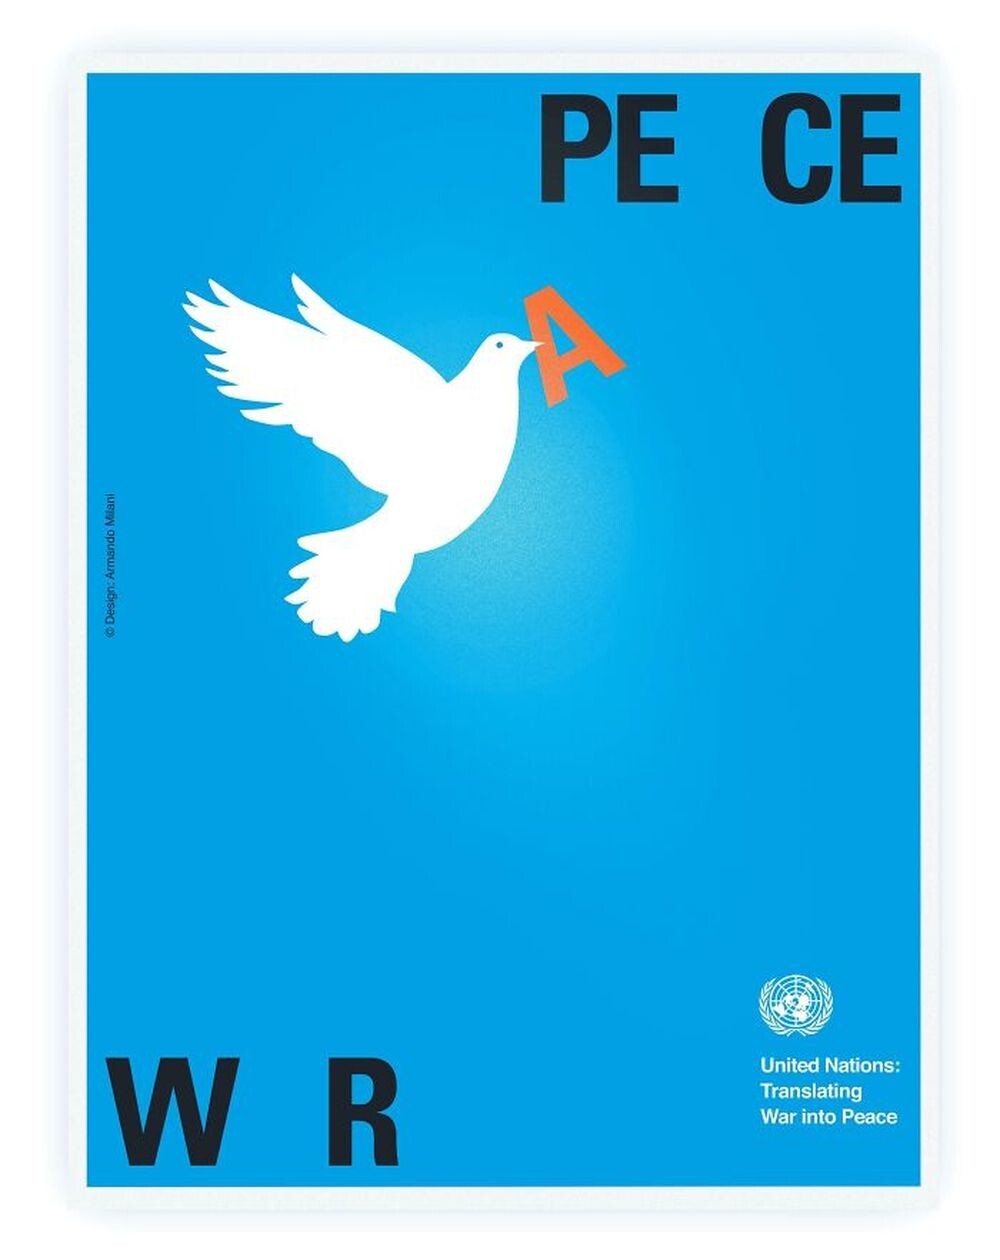 5. Война и мир: плакат, разработанный Армандо Милани для Организации Объединенных Наций